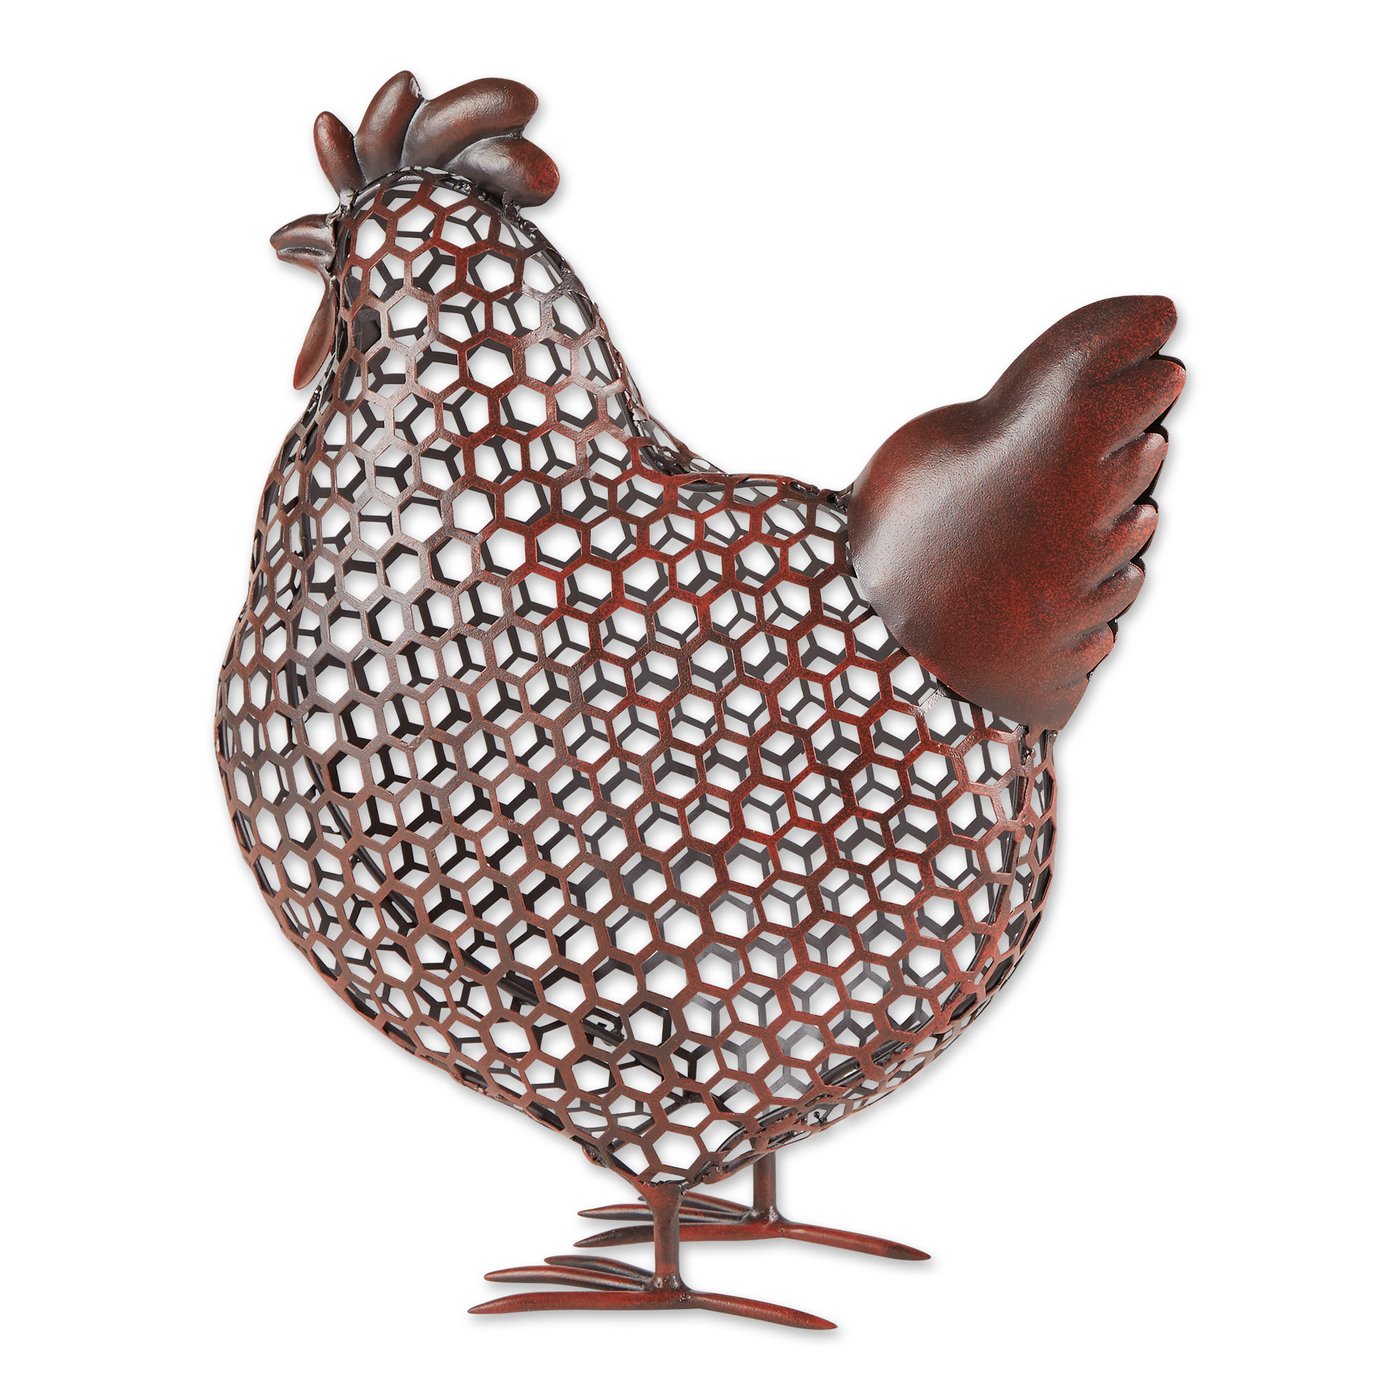 Chicken Wire Chicken Sculpture